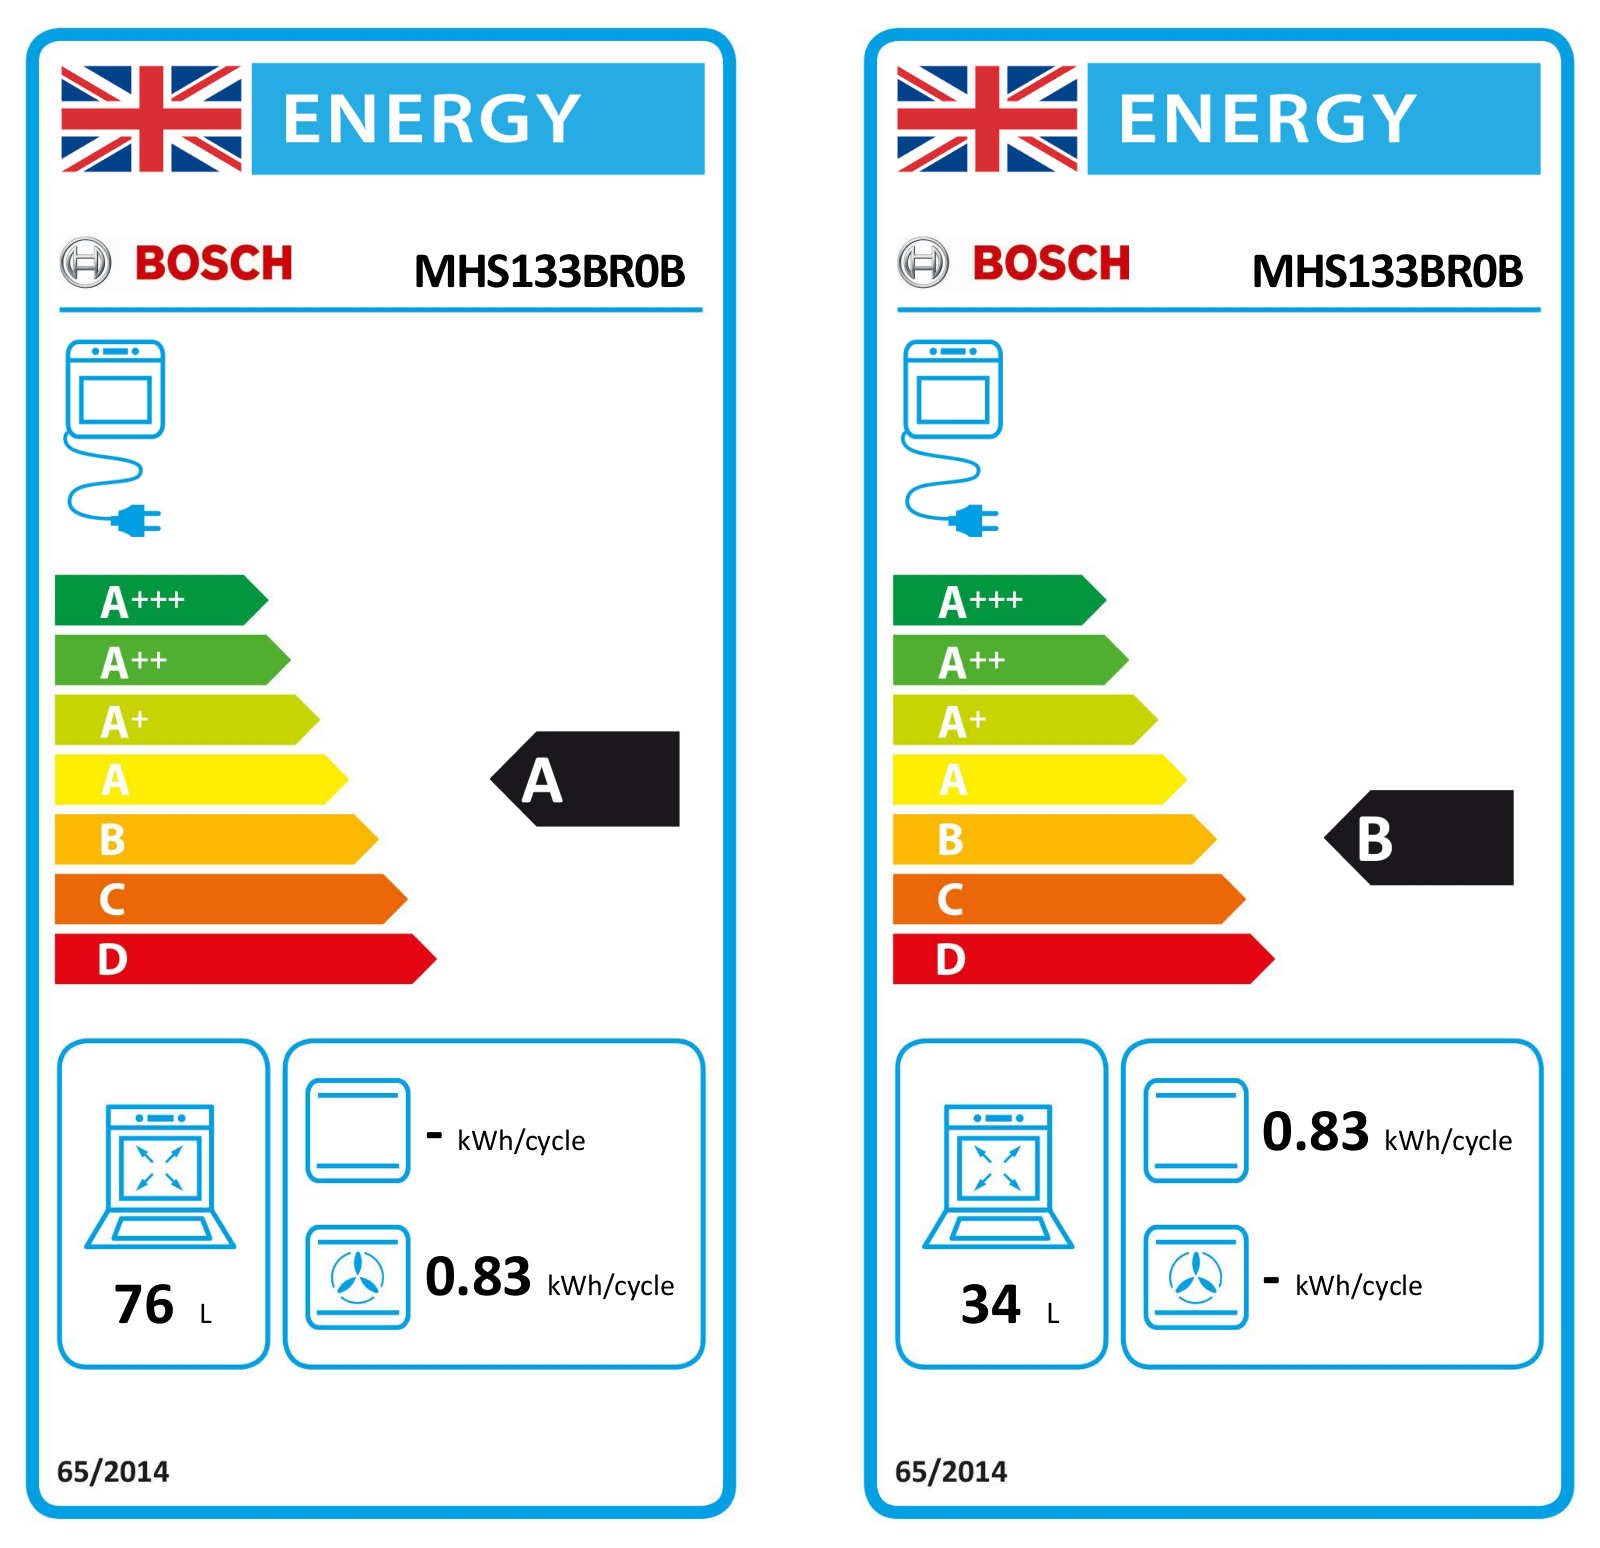 Bosch MHS133BR0B EU Energy Label